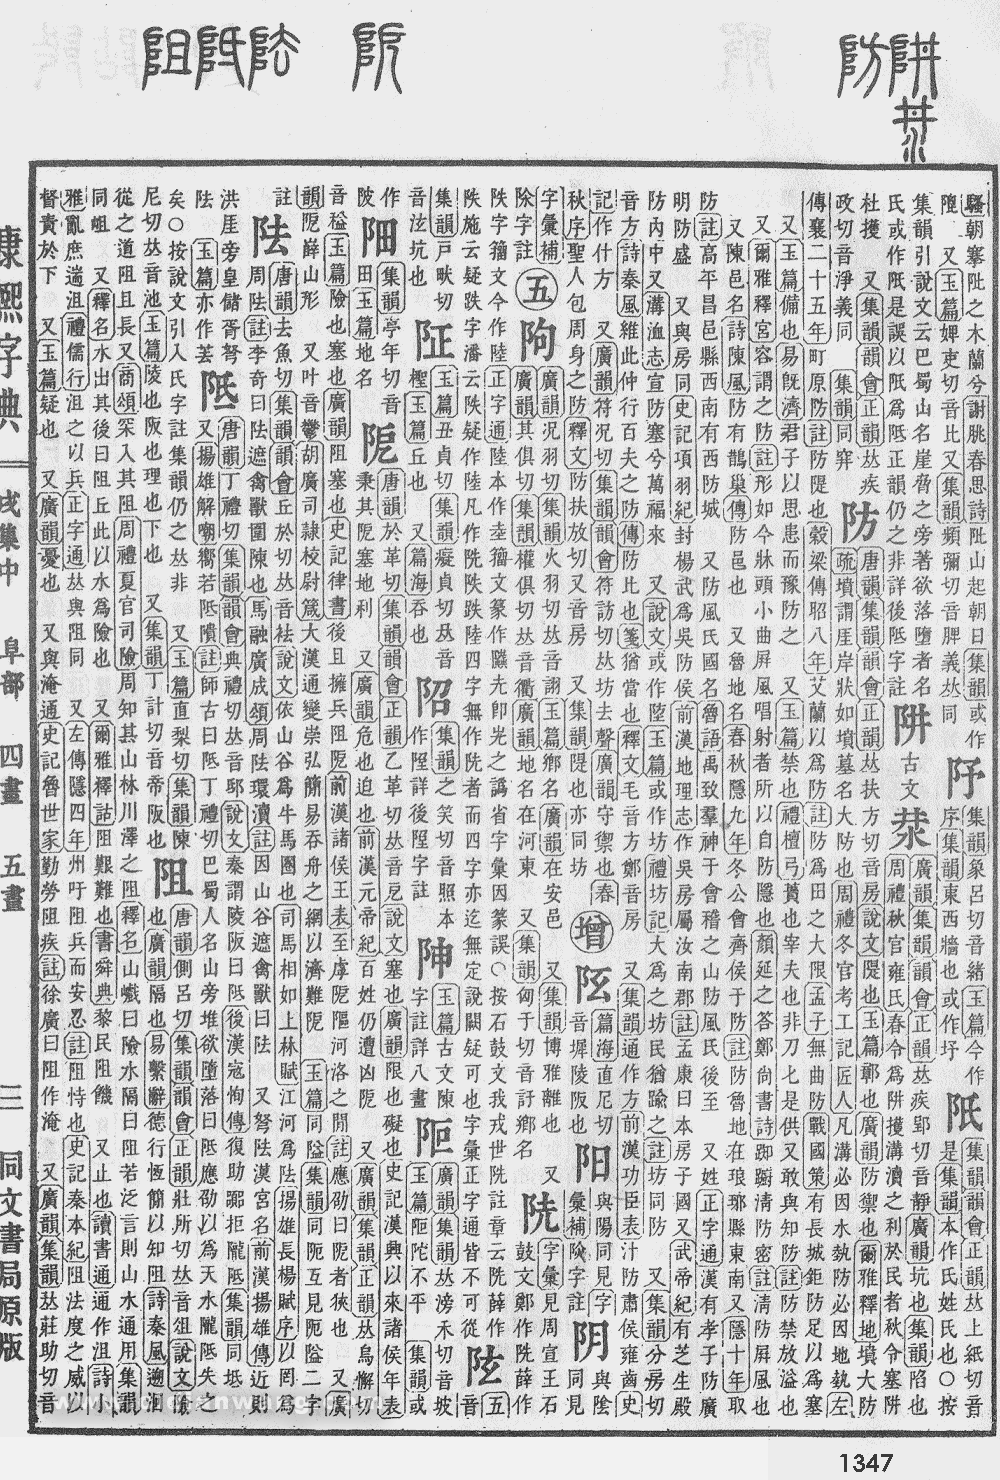 康熙字典掃描版第1347頁